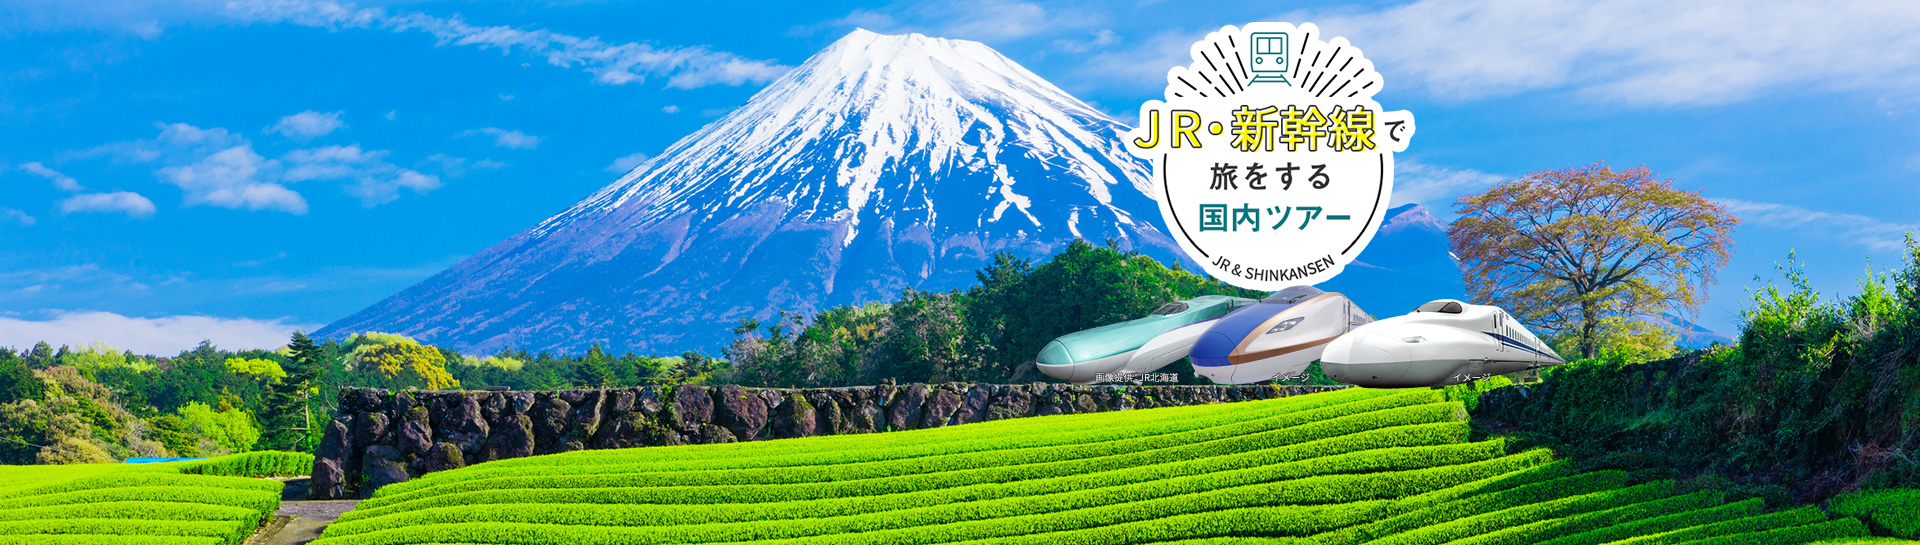 JR・新幹線で旅をする国内ツアー